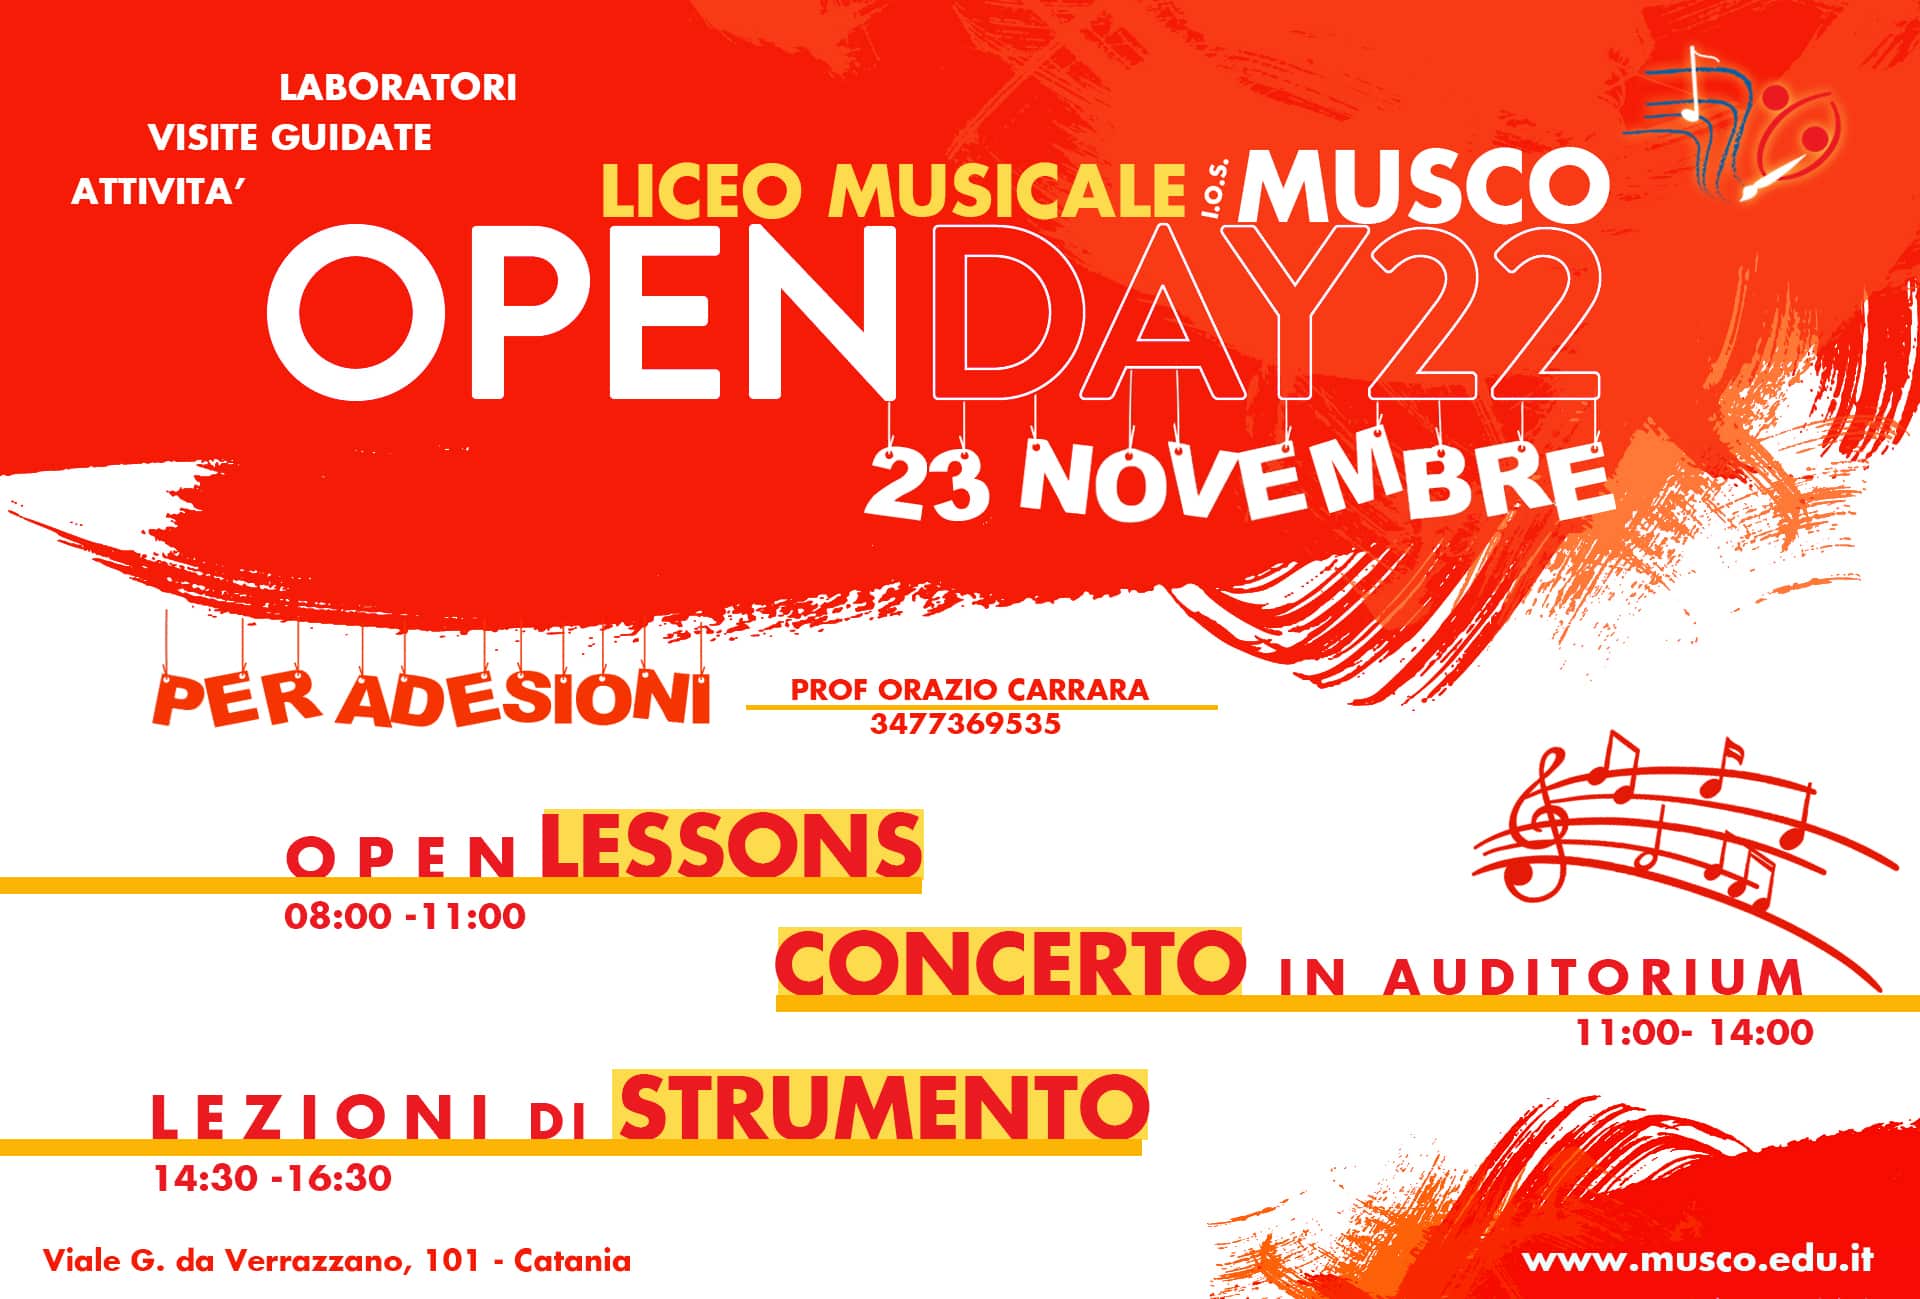 Il 23 novembre Open Day all’IOS “Musco” di Catania: il programma